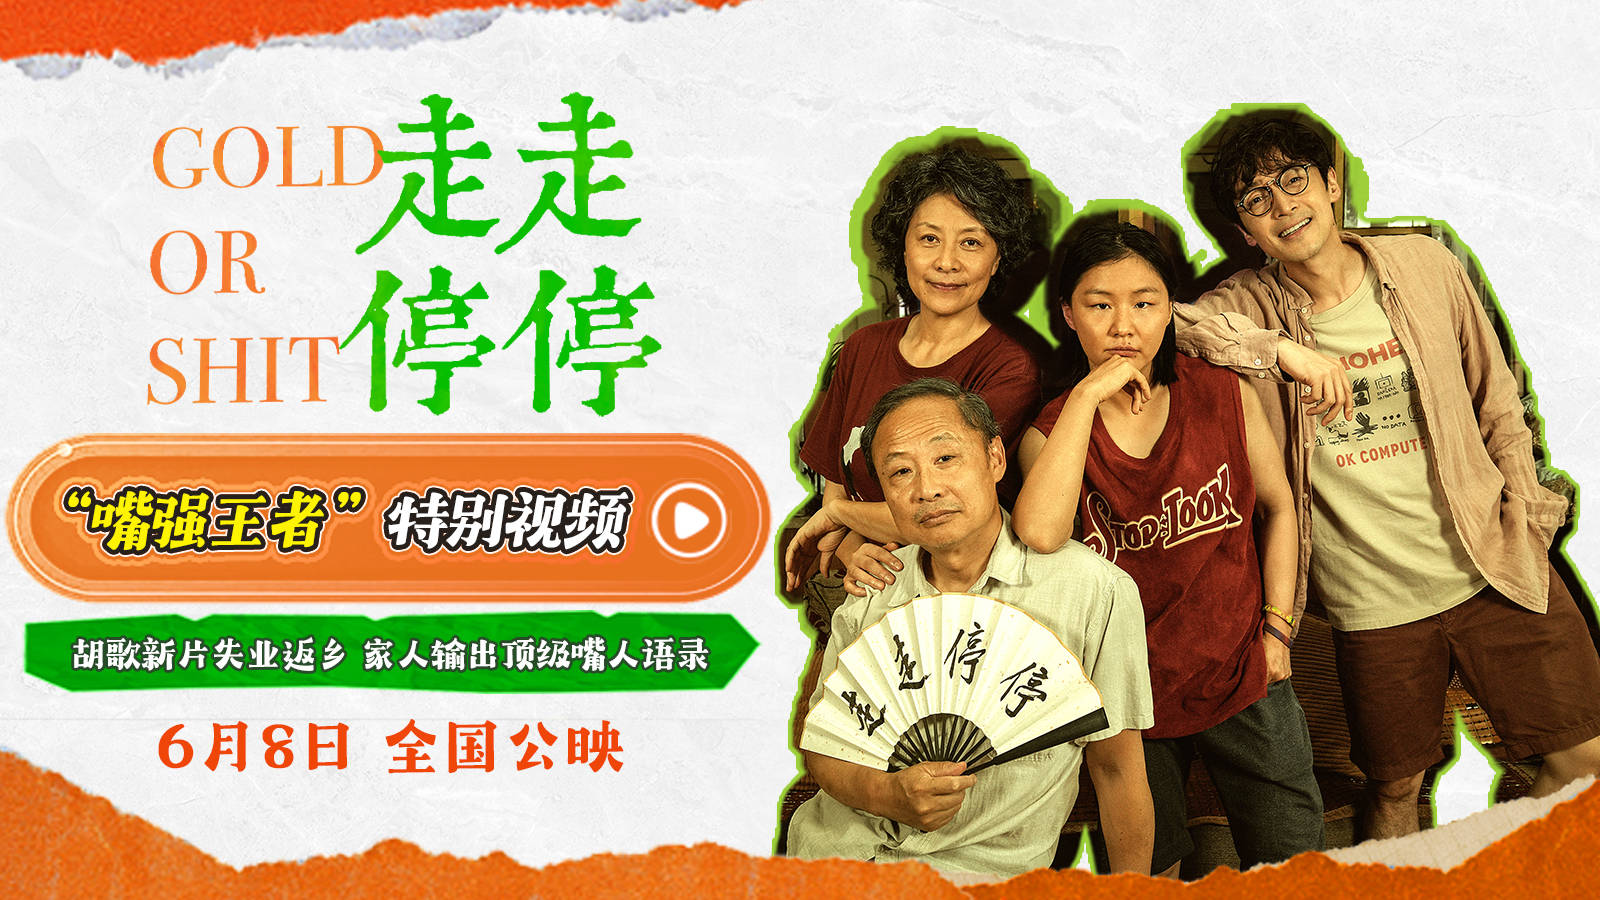 《走走停停》将于6月8日全国公映吴家人毒舌对话